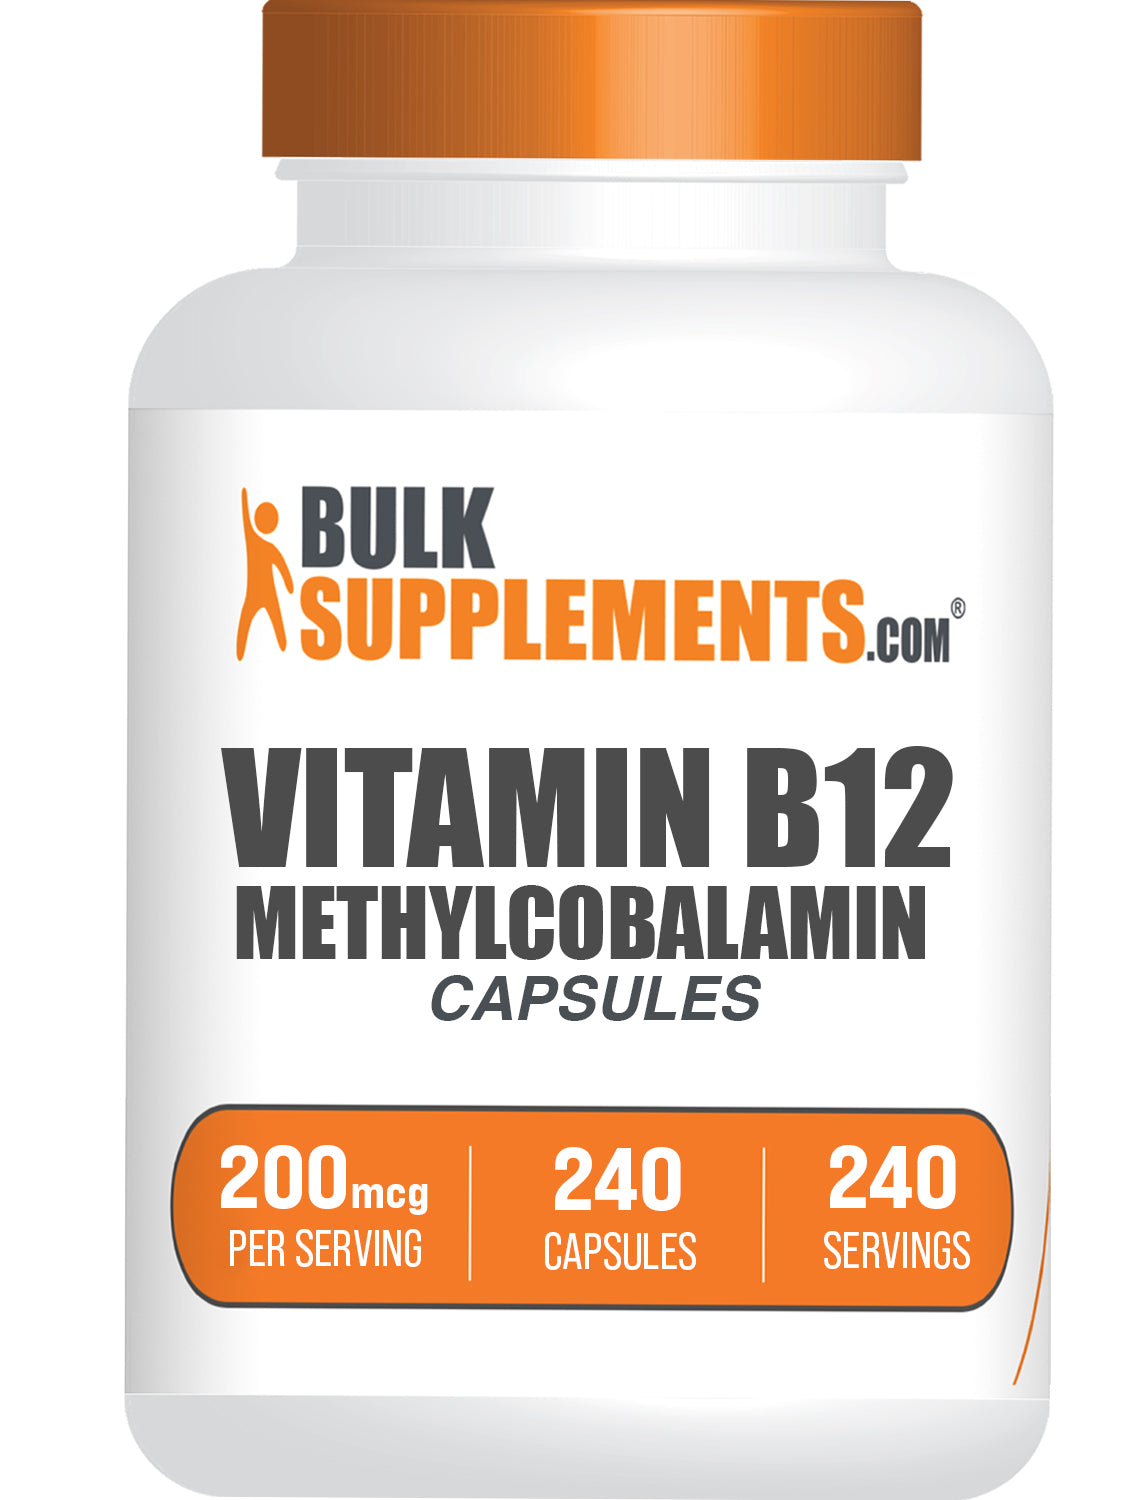 ויטמין B12 (1% מתילקובלמין) כמוסות